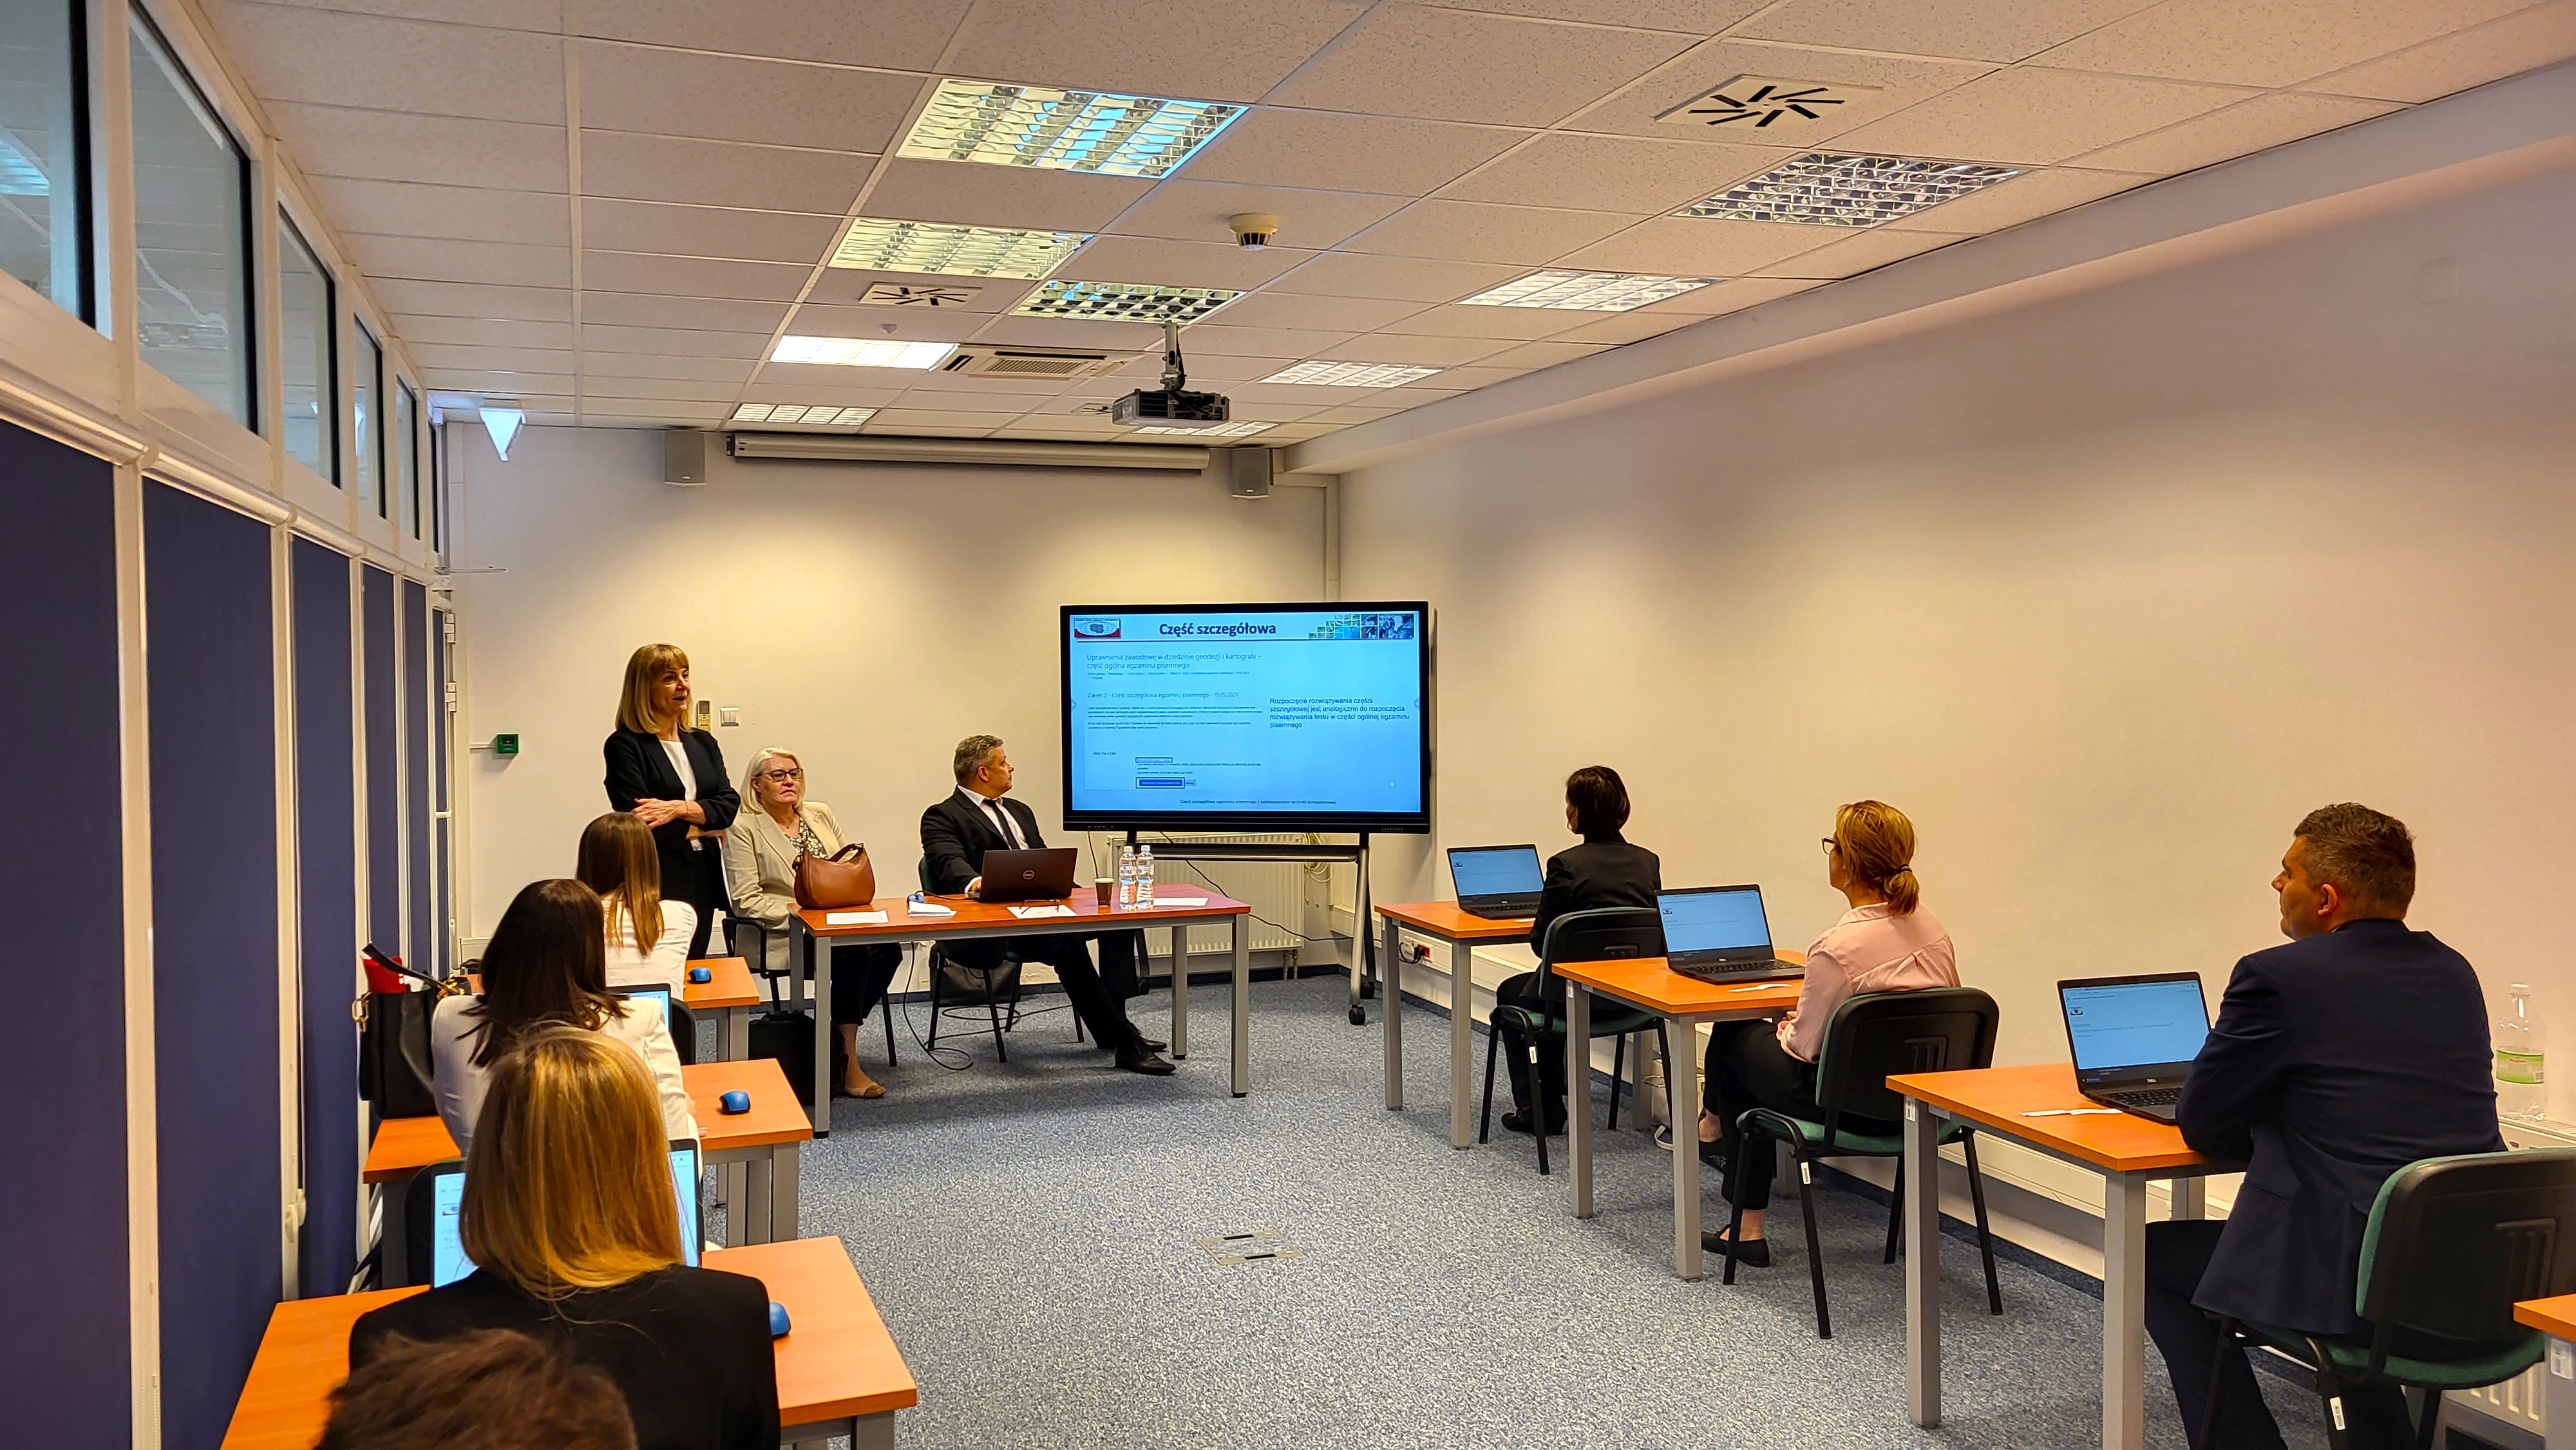  Zdjęcie przedstawia salę egzaminacyjną z członkami Komisji egzaminacyjnej i osobami przystępującymi do egzaminu siedzącymi pojedynczo przed laptopami.